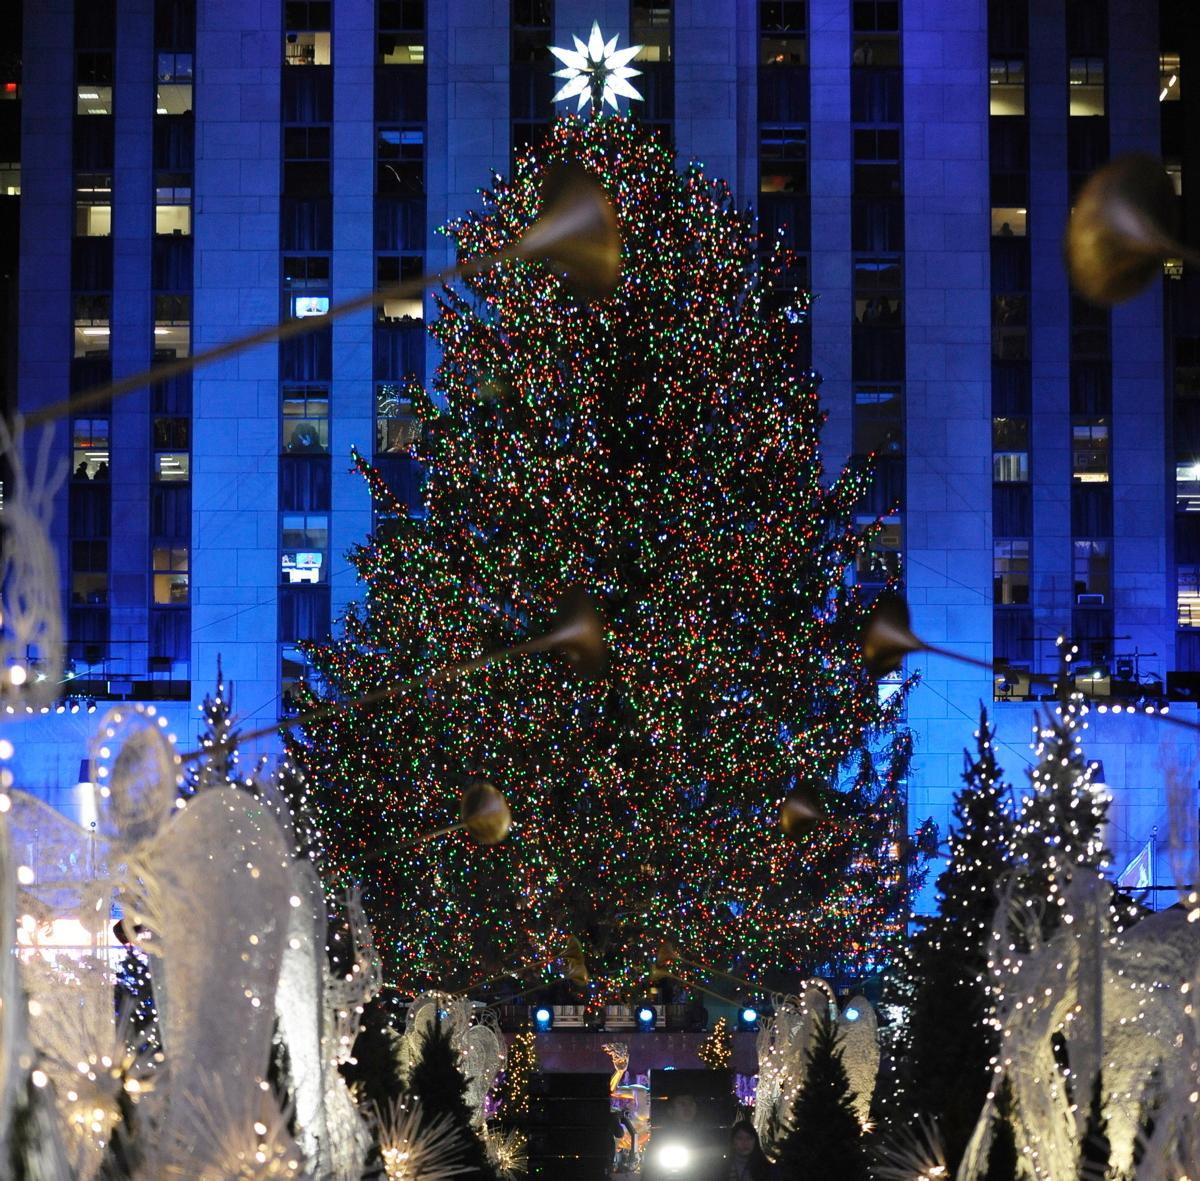 Rockefeller Christmas Tree Lighting 2019 Performers
 Pentatonix s Rockefeller Center Christmas tree